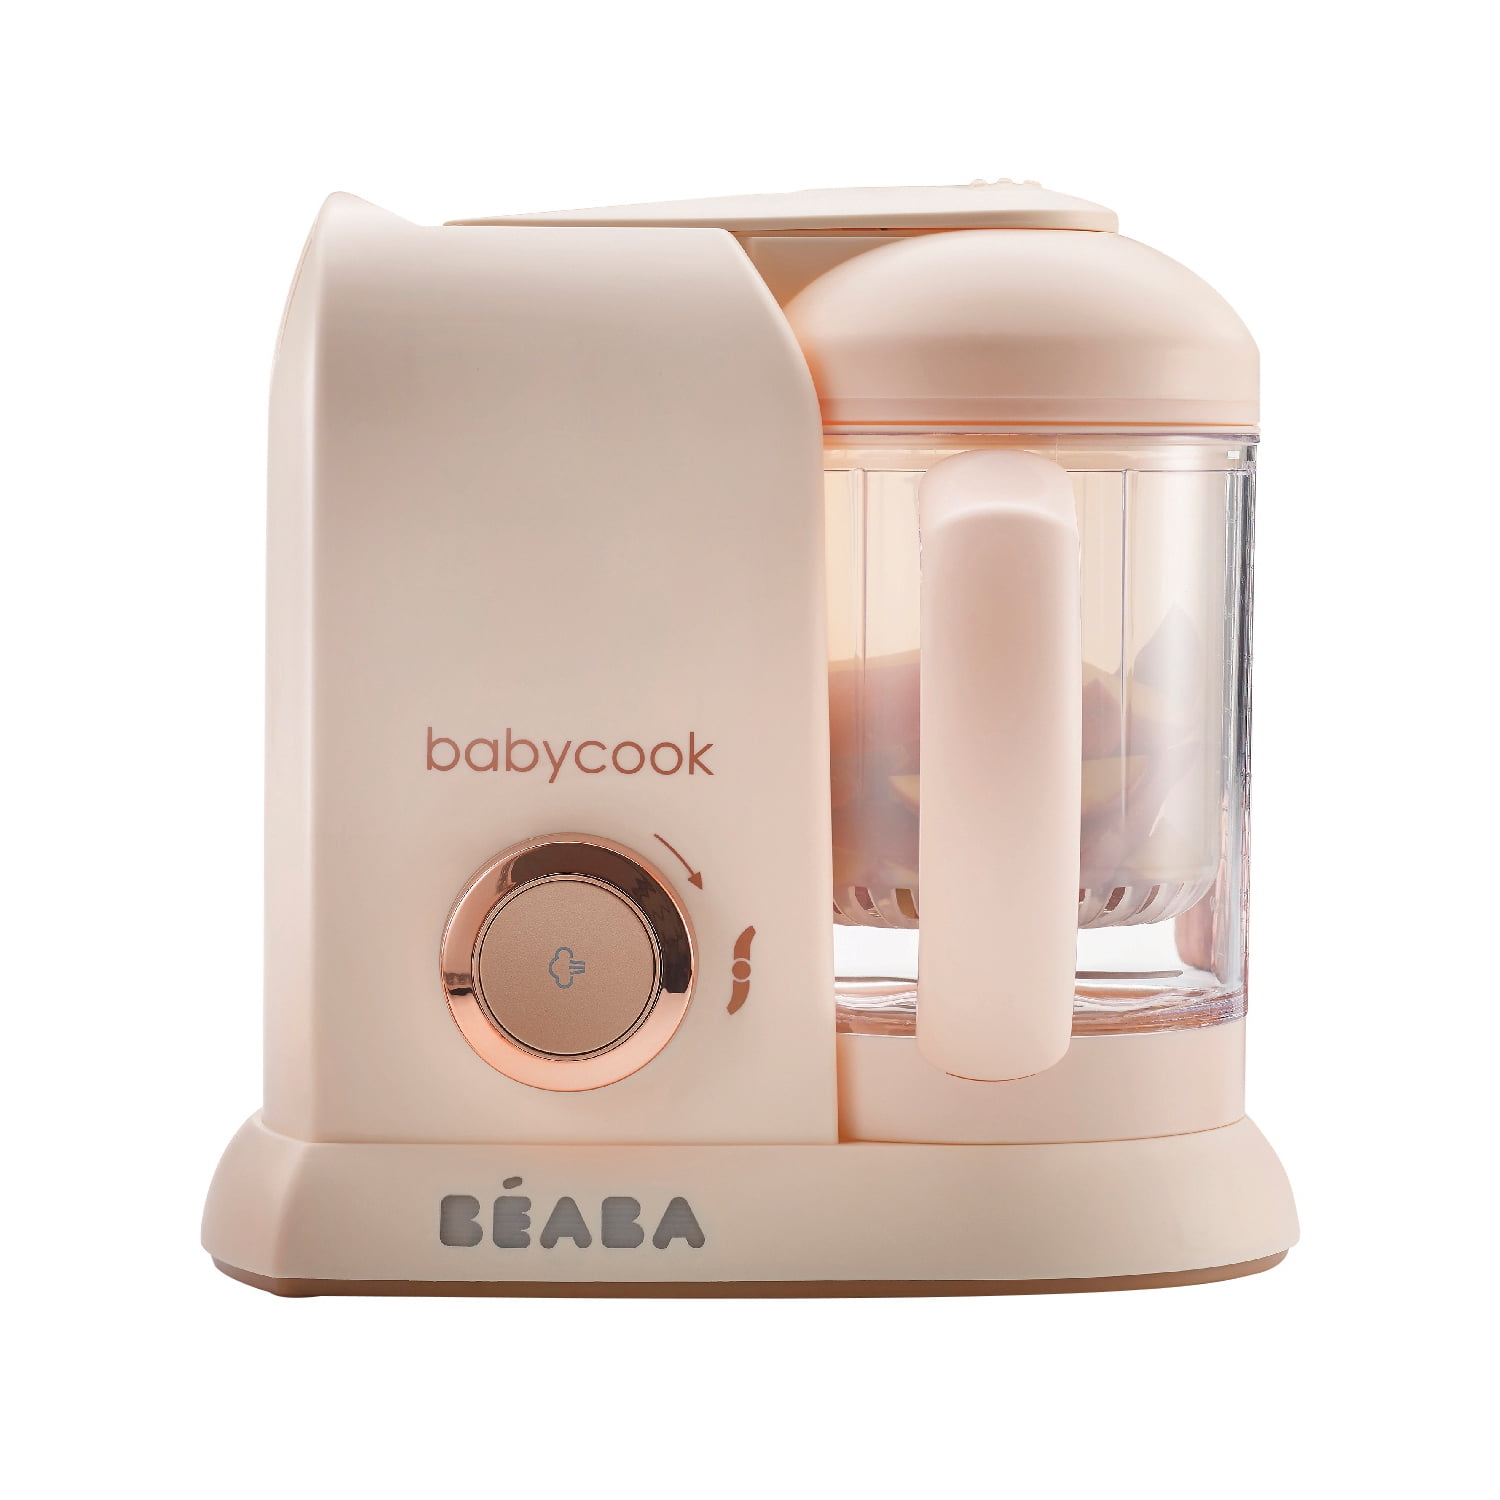 Beaba - Babycook Baby Food Maker, White